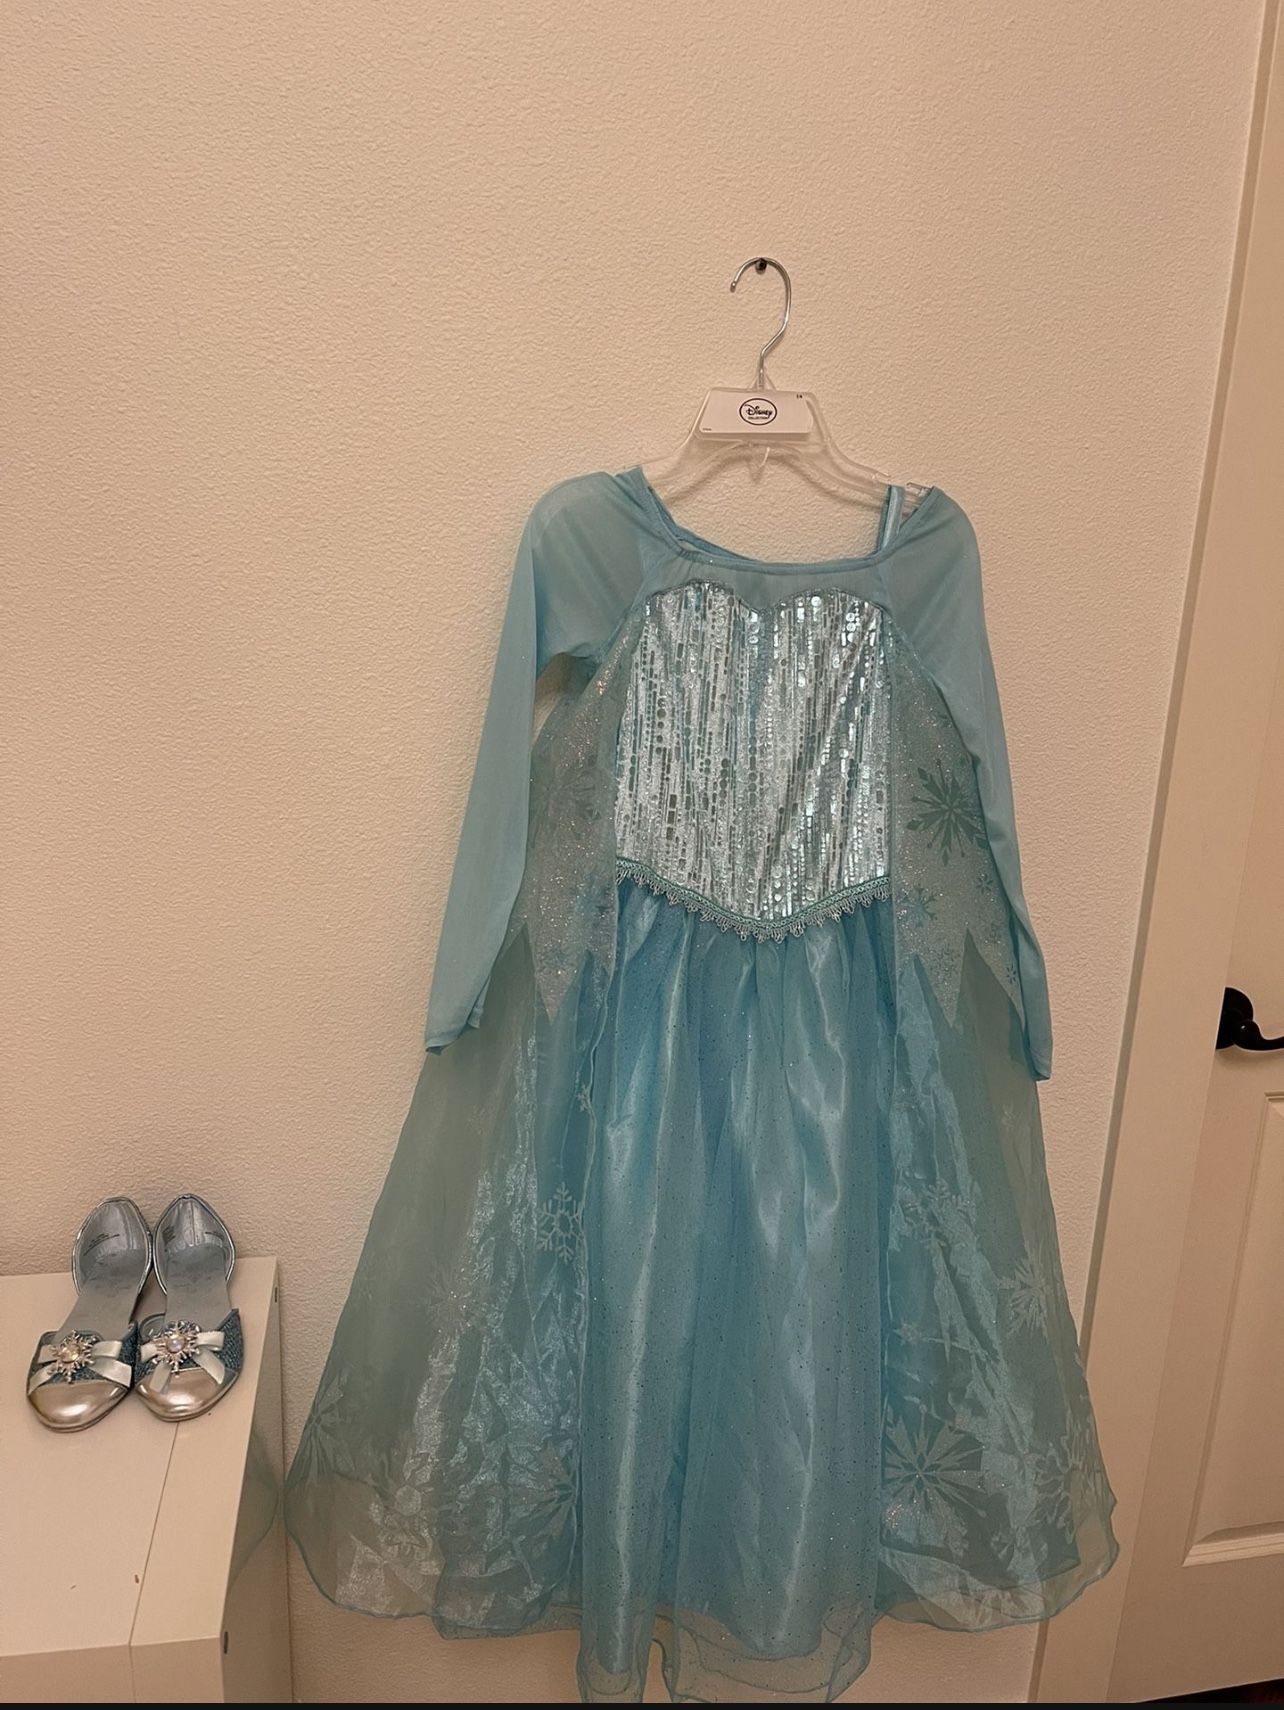 Elsa Dress Up Dress And Shoes